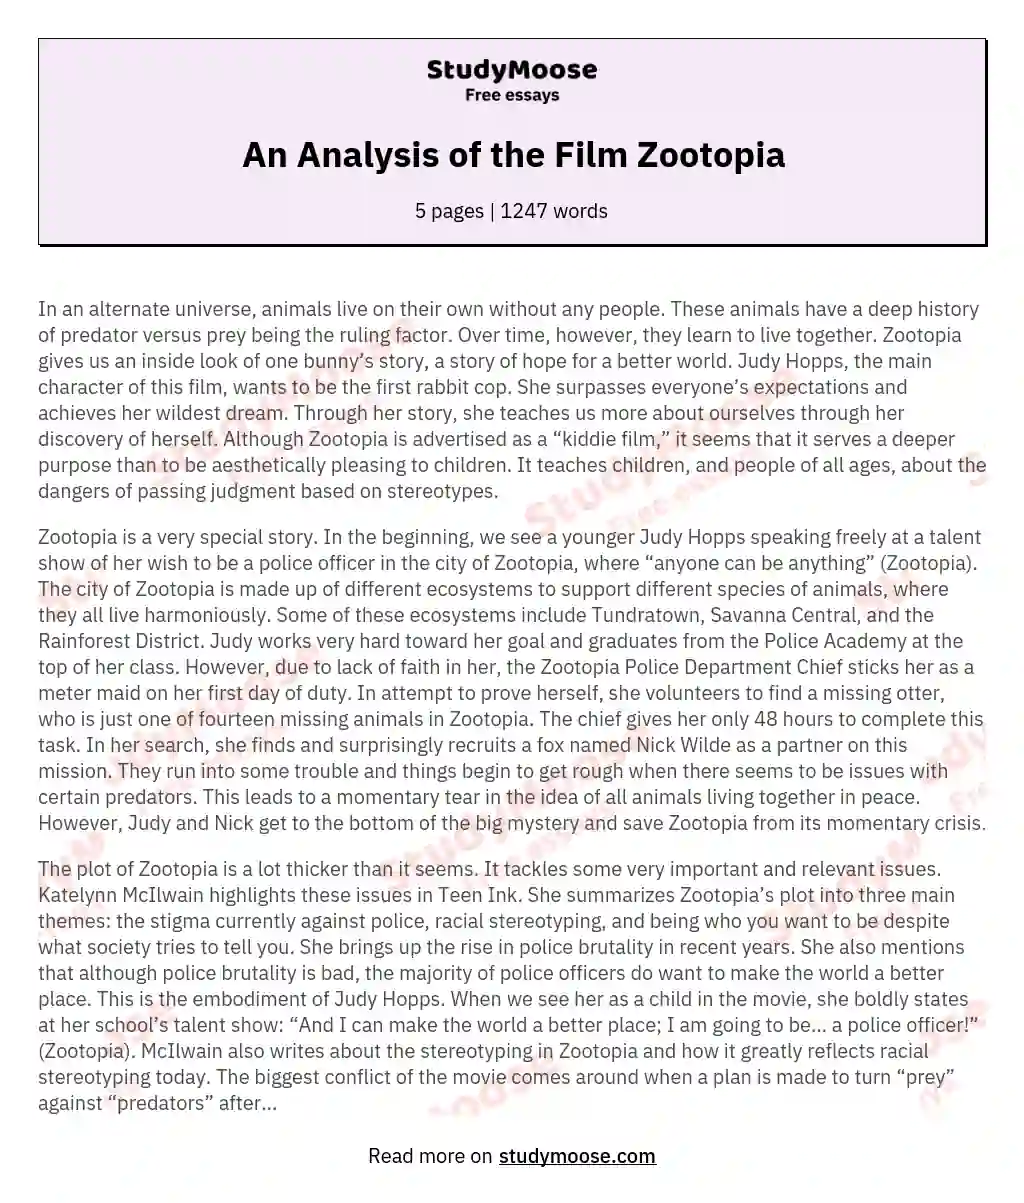 An Analysis of the Film Zootopia essay